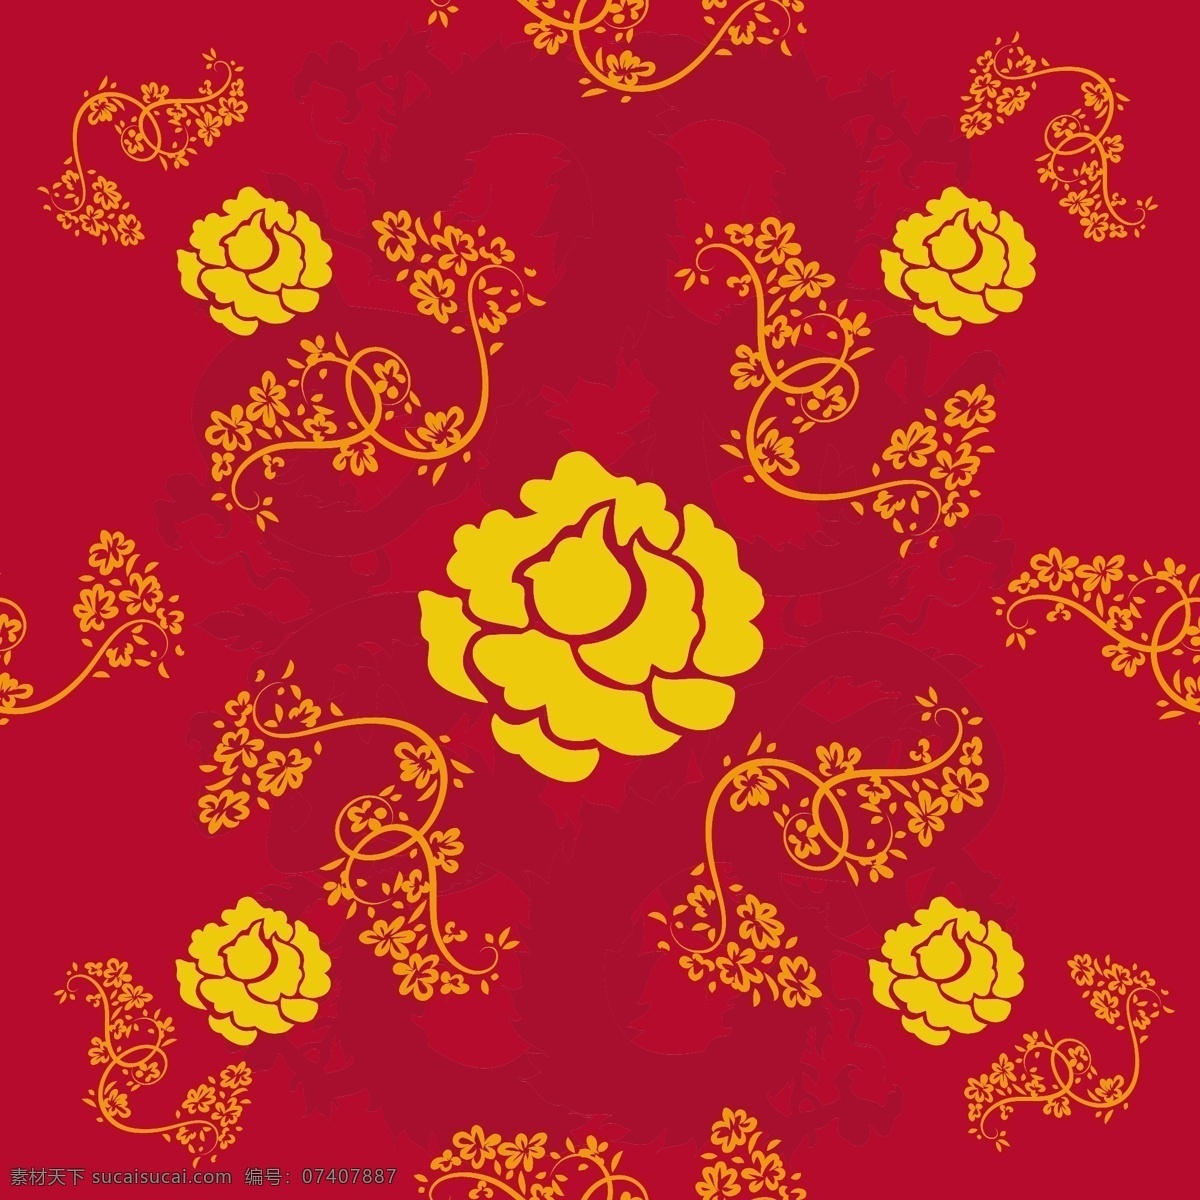 中国 传统 剪纸艺术 牡丹花 矢量 剪纸 红色 黄色 矢量素材 设计素材